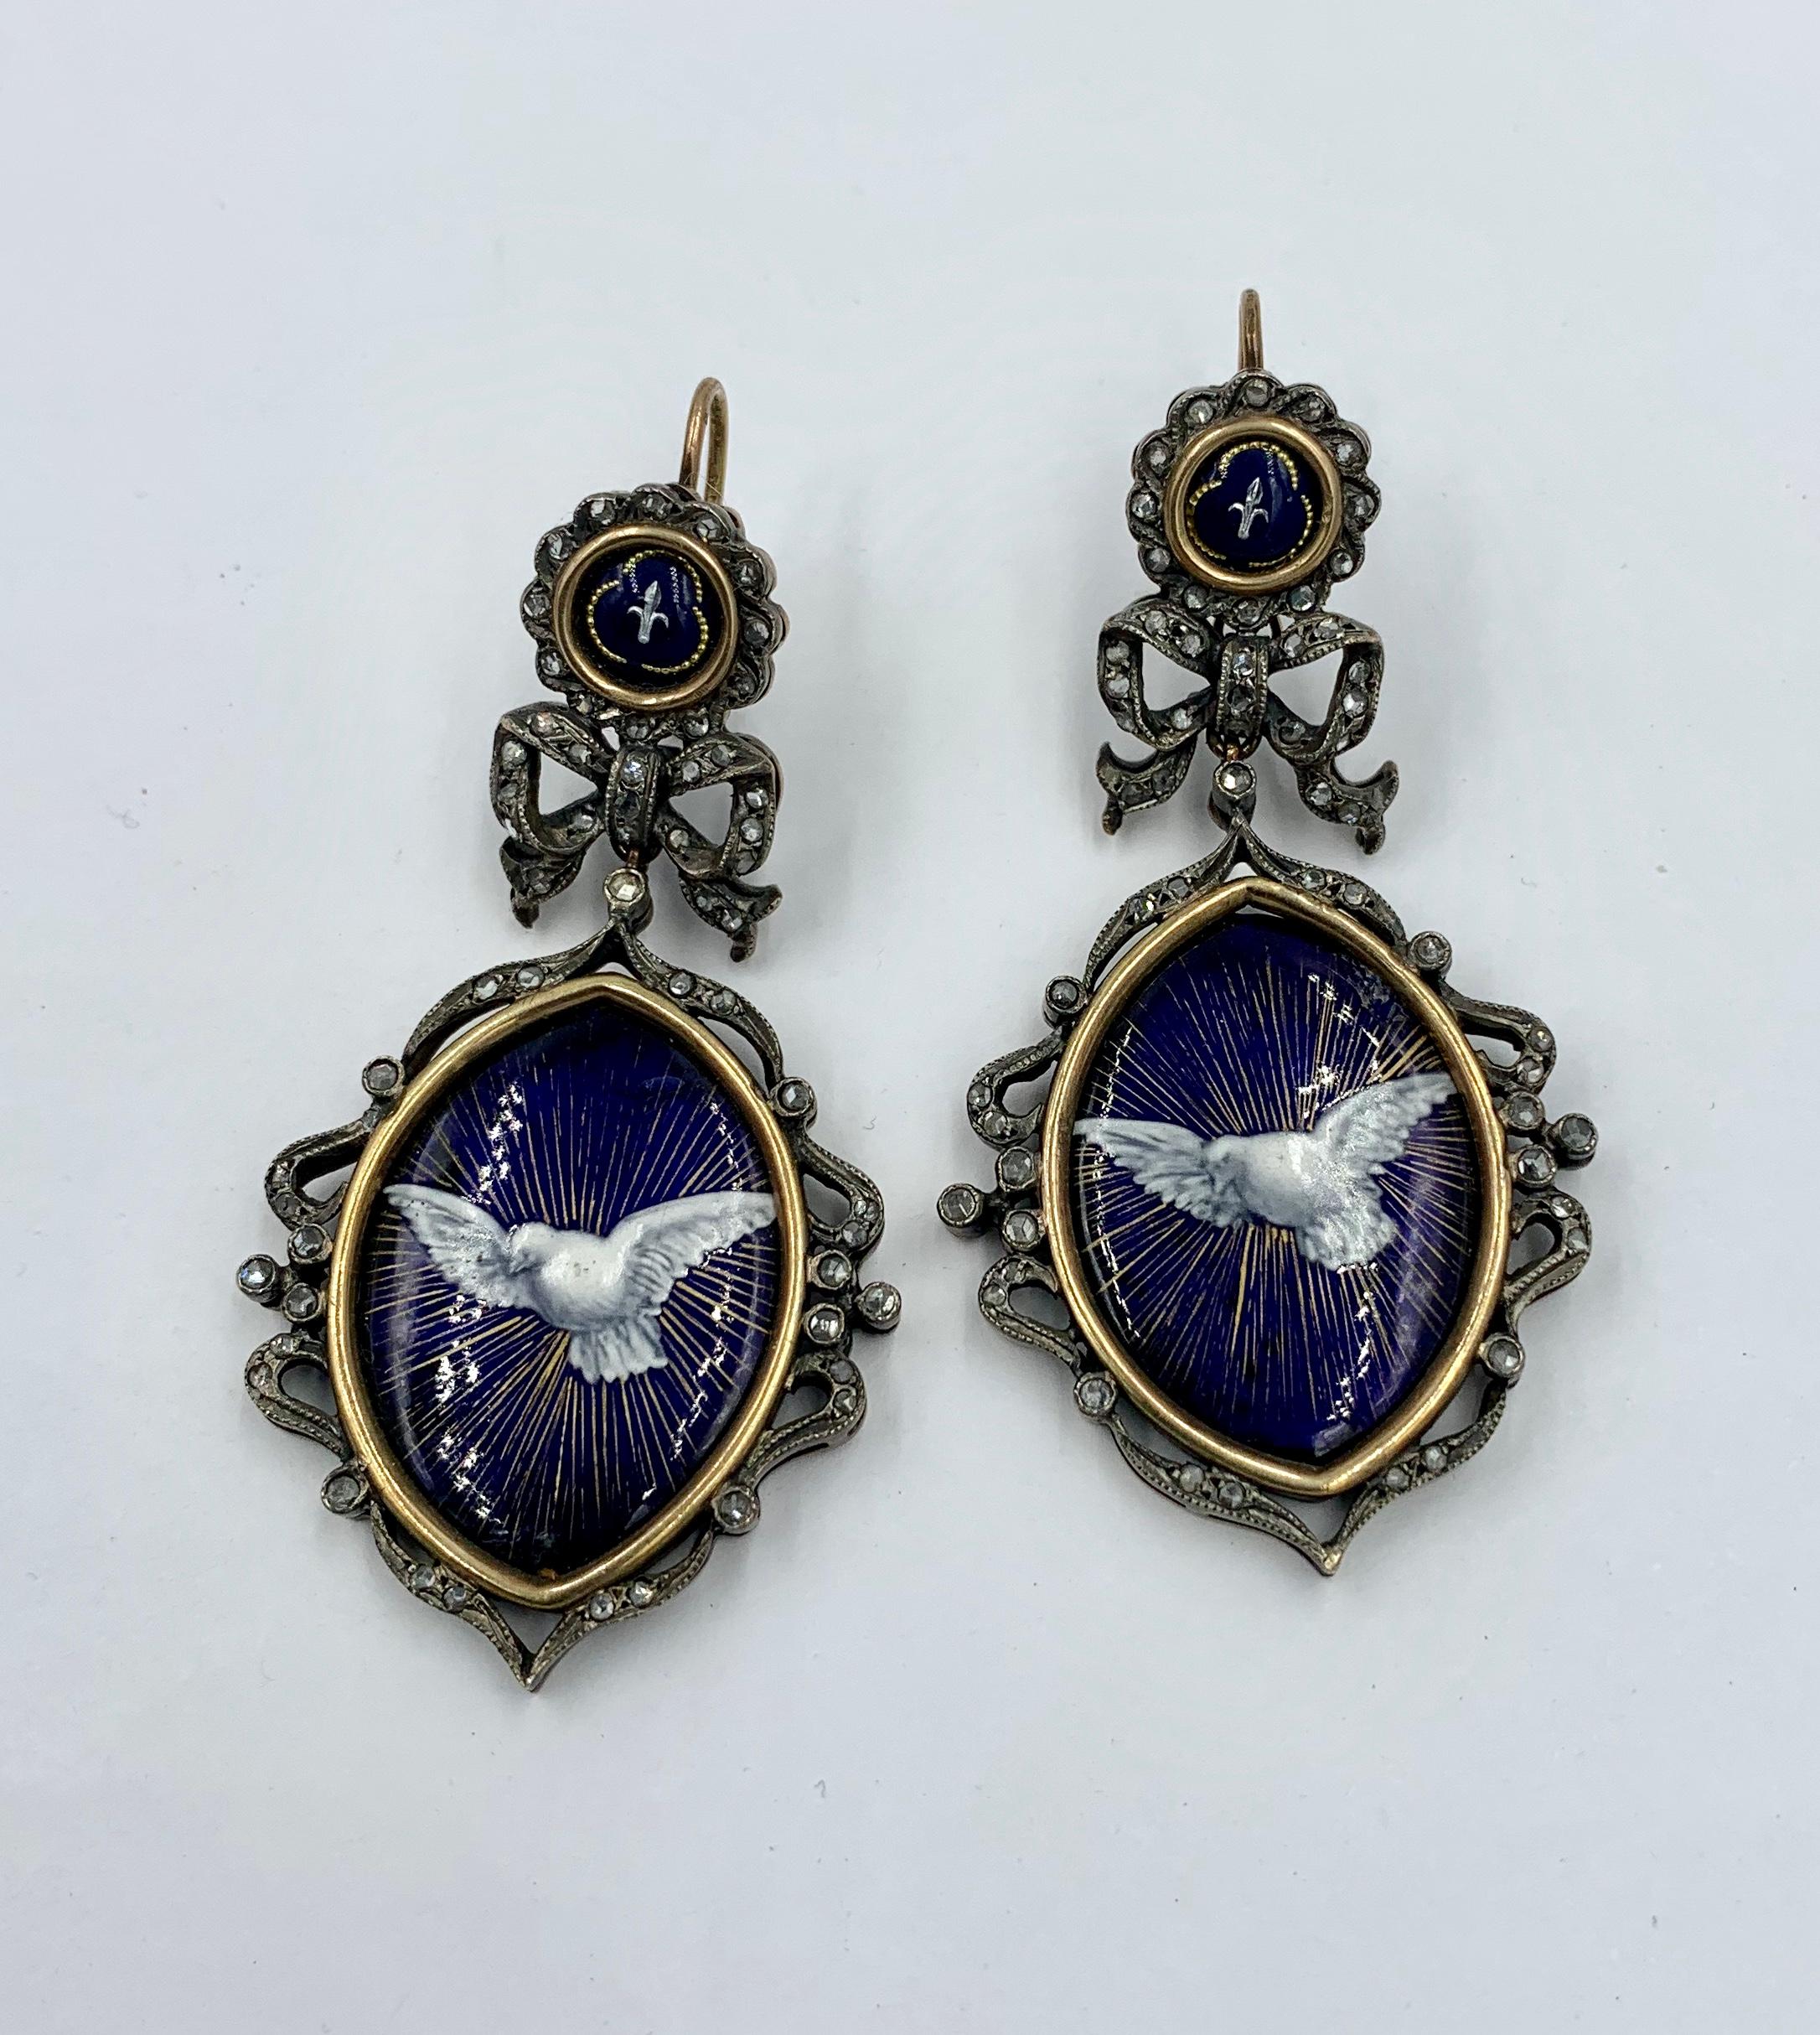 Die außergewöhnlichen Emaille-Rosenschliff-Diamant-Taubenvogel-Ohrringe sind Juwelen in Museumsqualität, die aus der georgianischen bis viktorianischen Zeit stammen.   Die Ohrringe zeigen eine Taube im Flug vor einem königsblauen Hintergrund mit